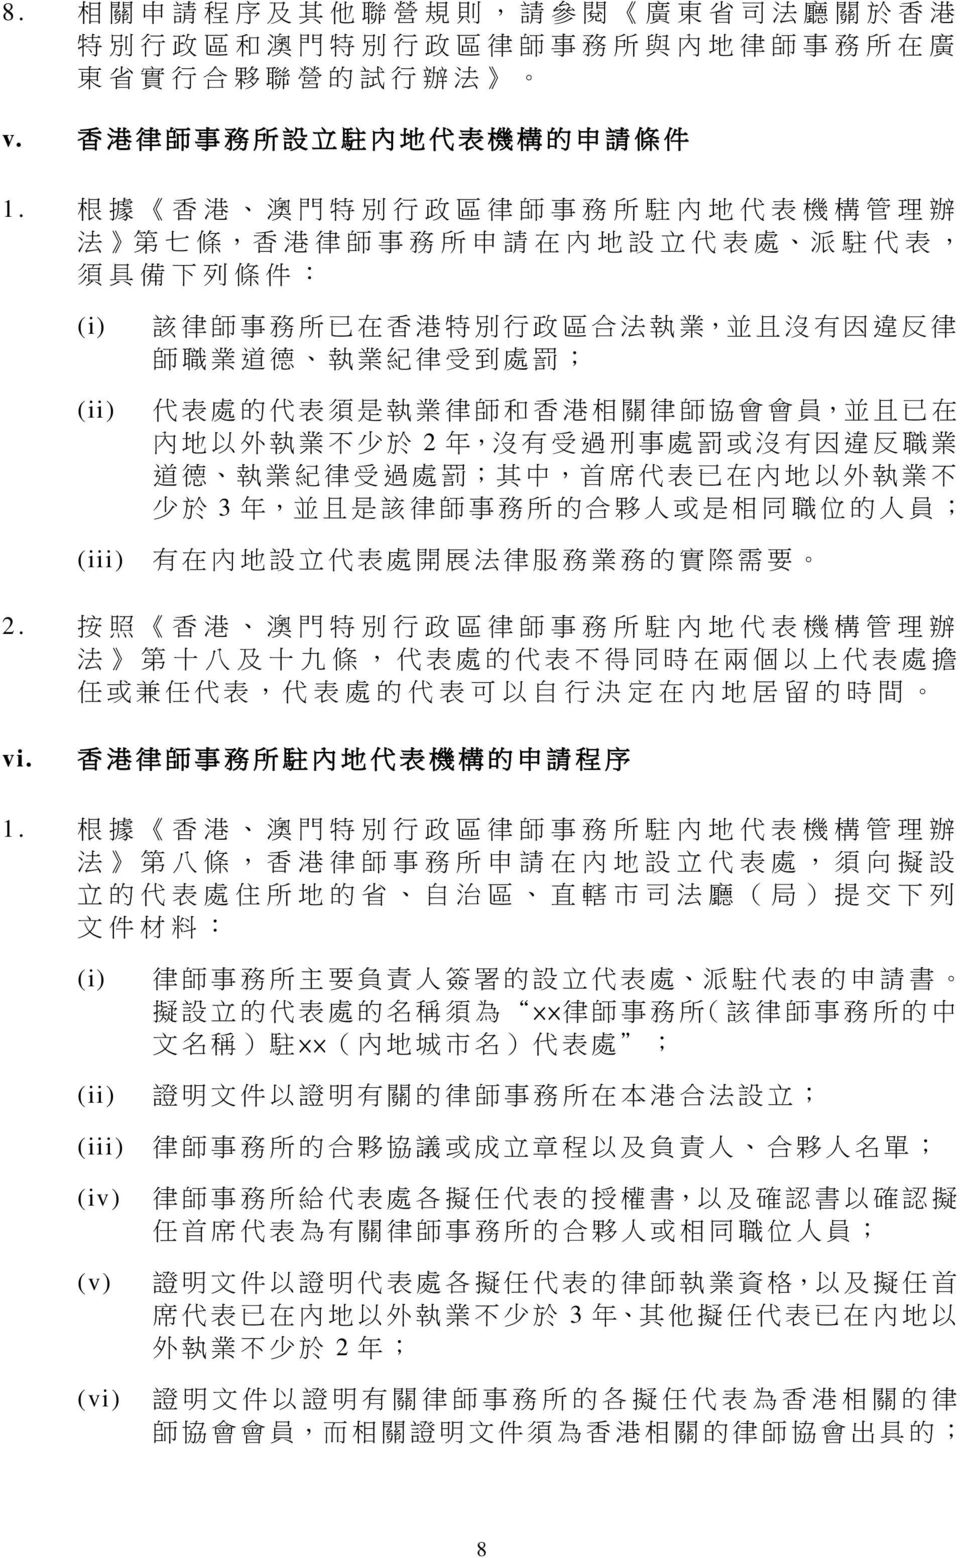 律 受 到 處 罰 ; 代 表 處 的 代 表 須 是 執 業 律 師 和 香 港 相 關 律 師 協 會 會 員, 並 且 已 在 內 地 以 外 執 業 不 少 於 2 年, 沒 有 受 過 刑 事 處 罰 或 沒 有 因 違 反 職 業 道 德 執 業 紀 律 受 過 處 罰 ; 其 中, 首 席 代 表 已 在 內 地 以 外 執 業 不 少 於 3 年, 並 且 是 該 律 師 事 務